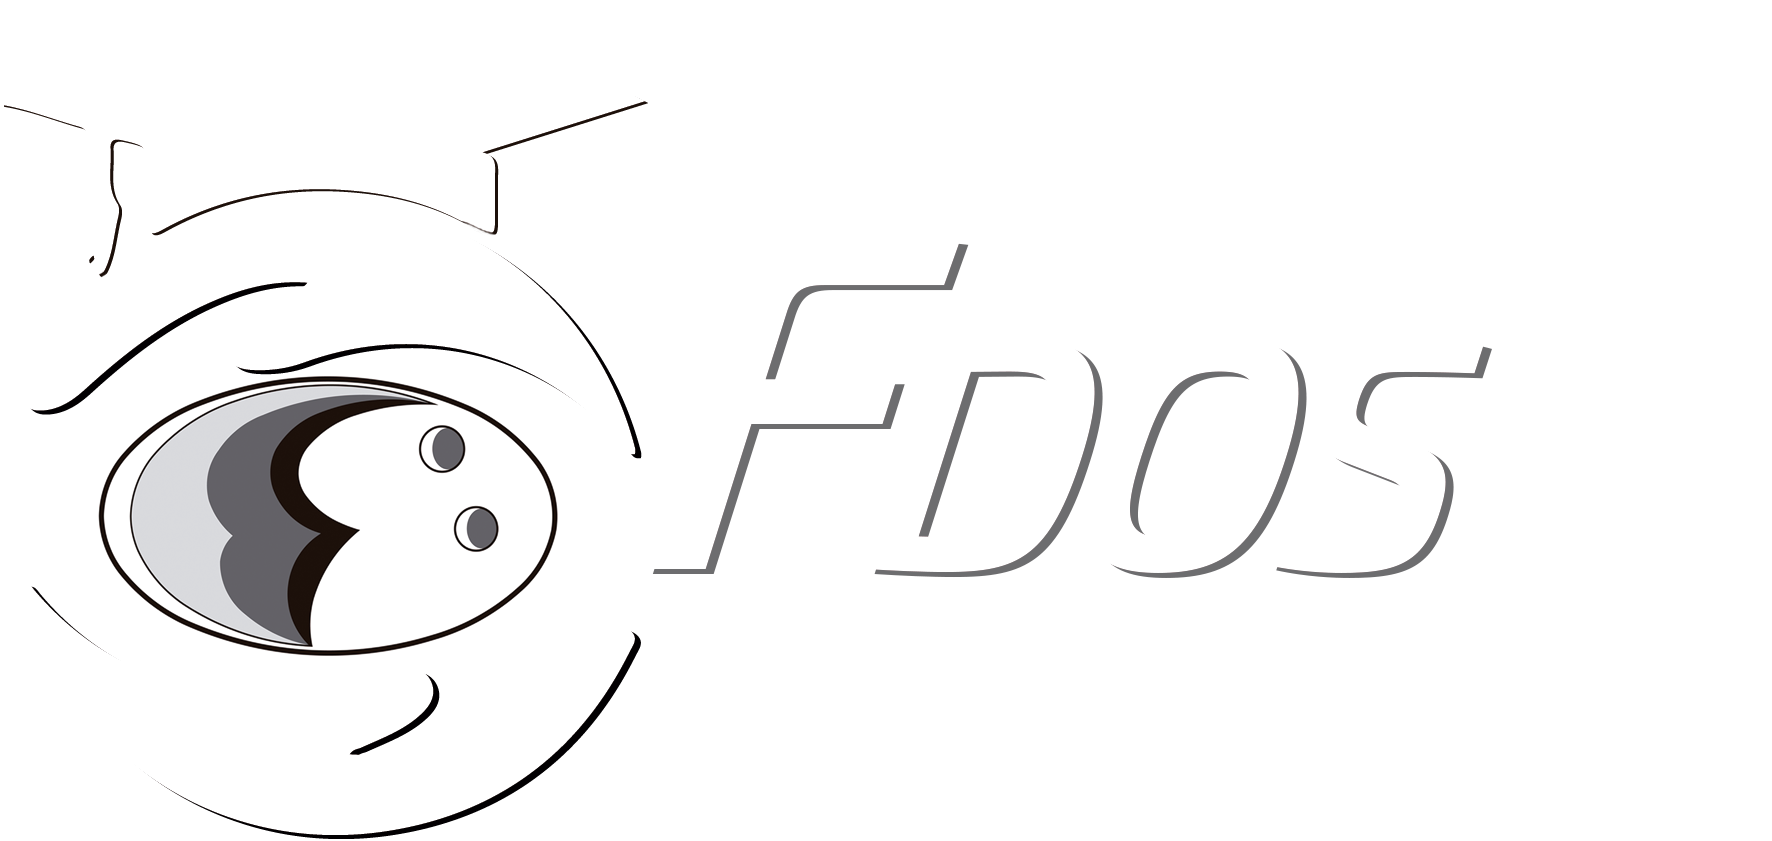 FDOS .net